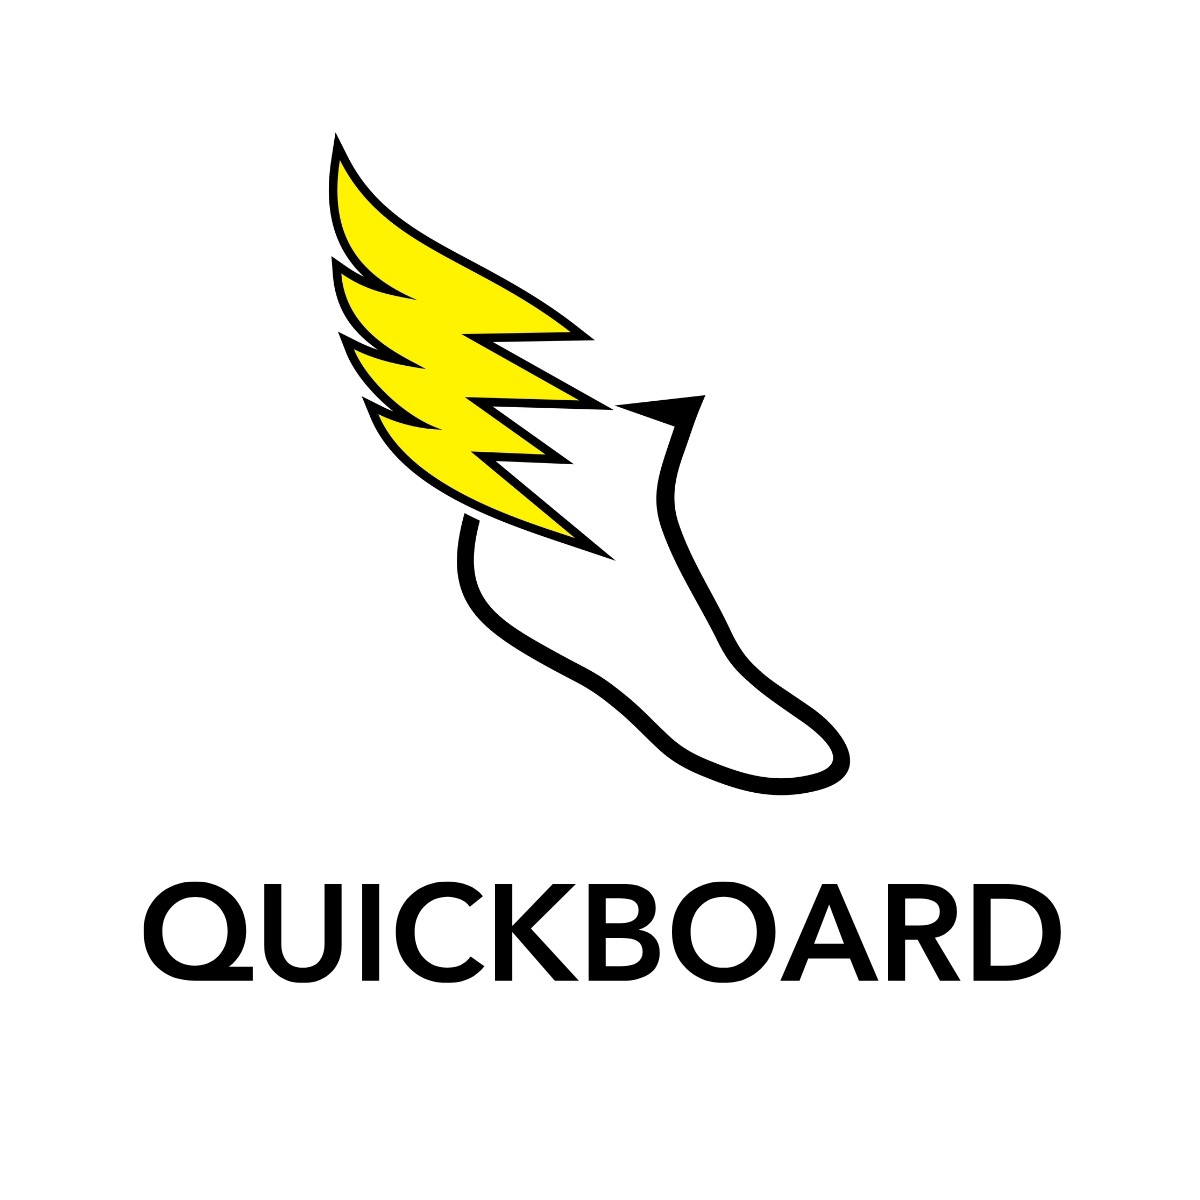 The Quick Board